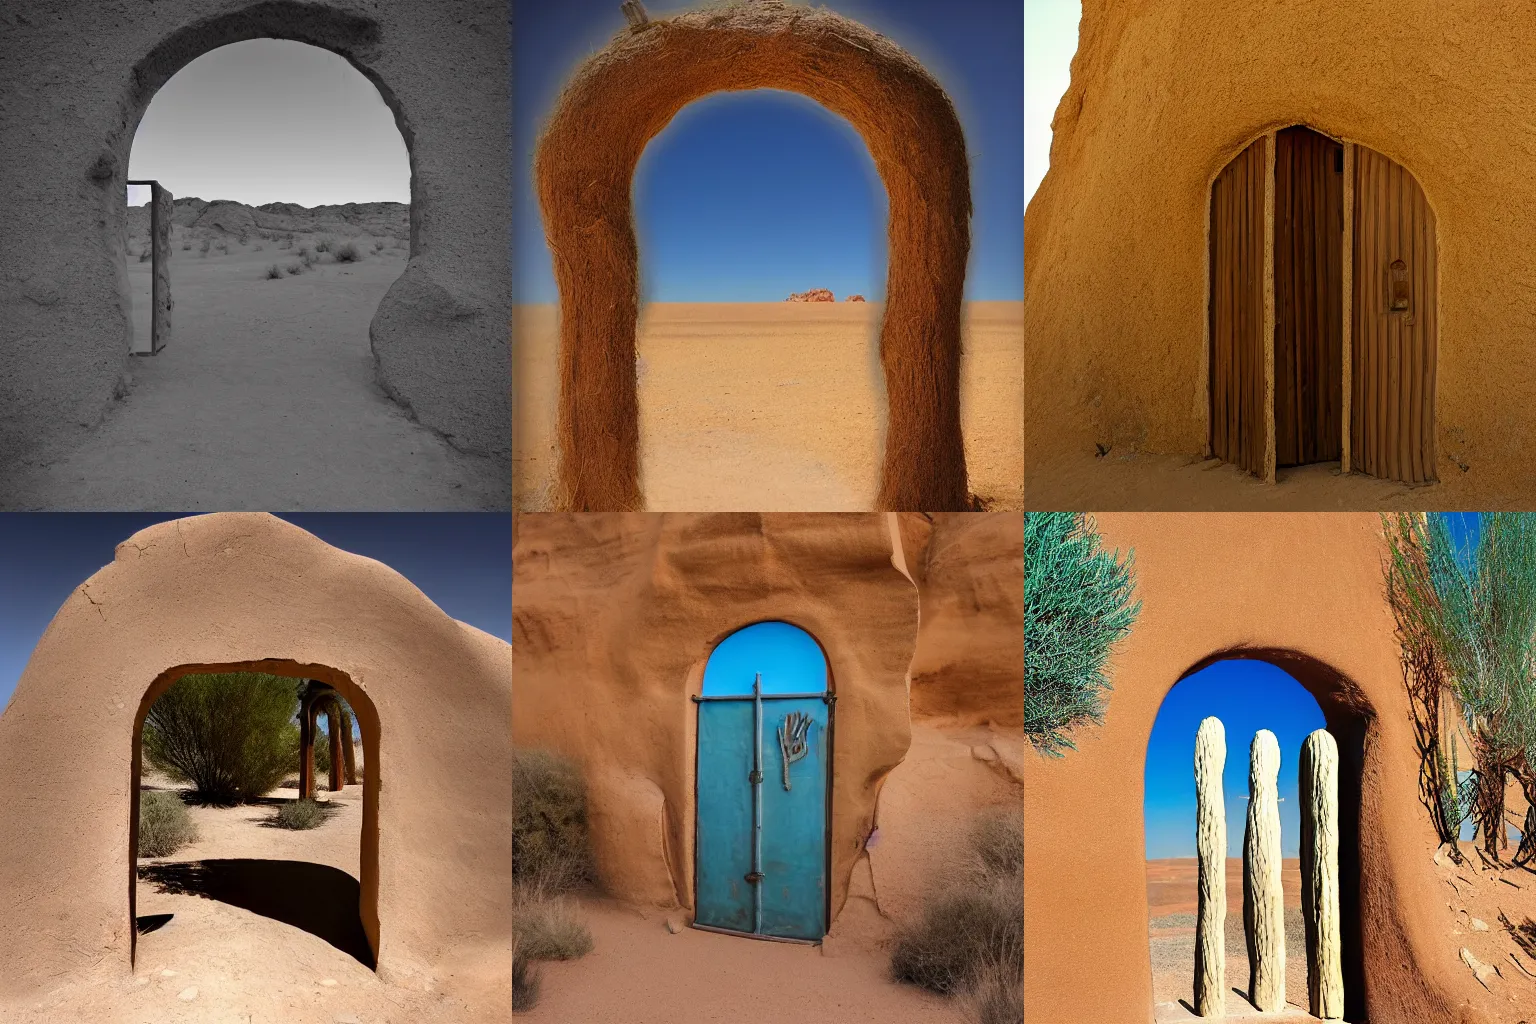 Prompt: surrealist doorway in middle of the desert